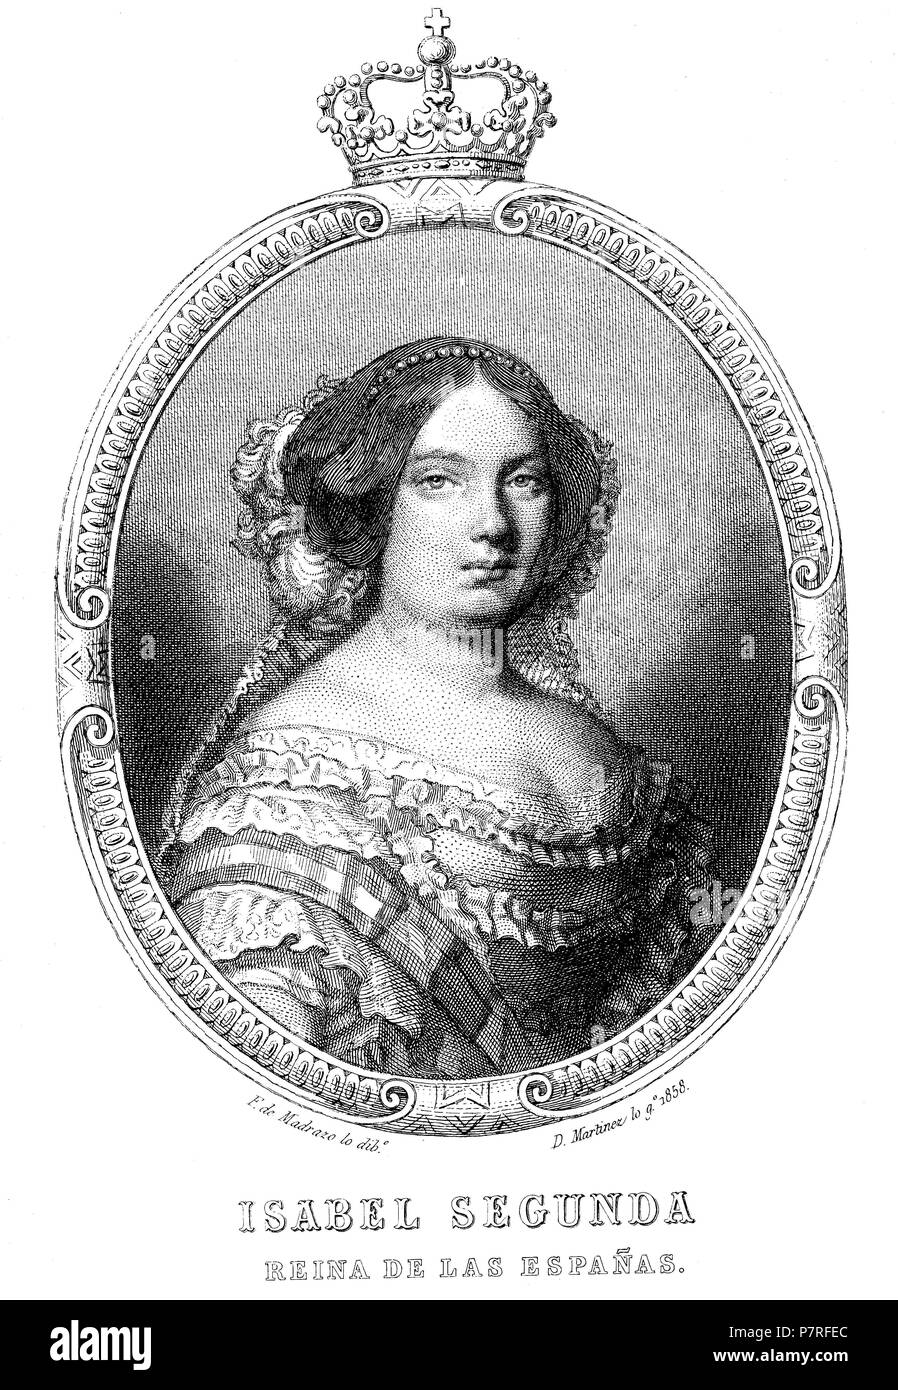 Isabel II de Borbón (1830-1904), reina de España de 1833 a 1868. Grabado de 1859. Stock Photo